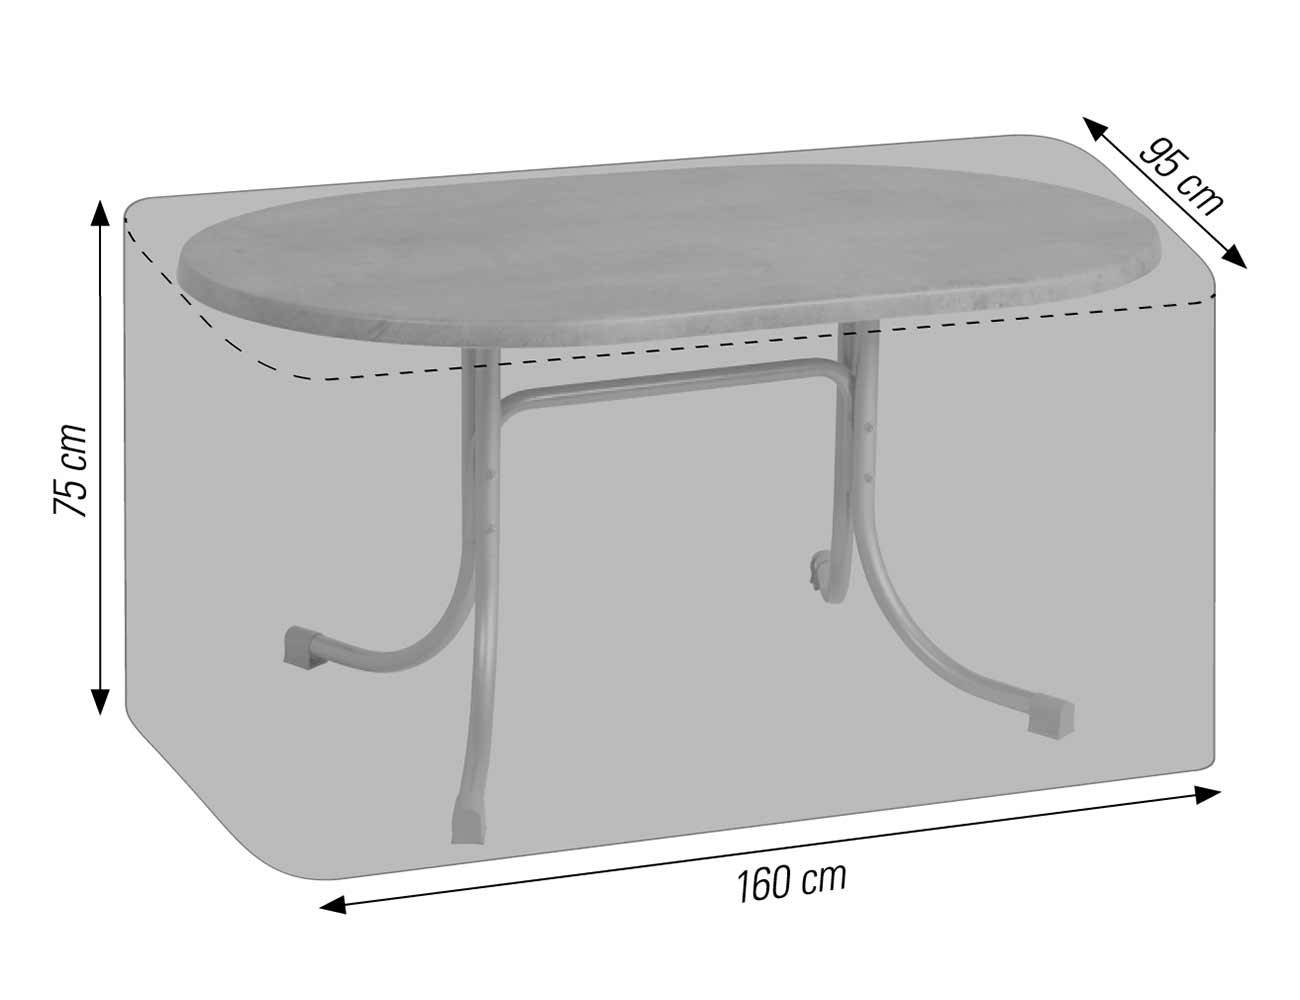 Schutzhülle für ovale Tische bis 160x95 cm anthrazit acamp cappa Typ 57707